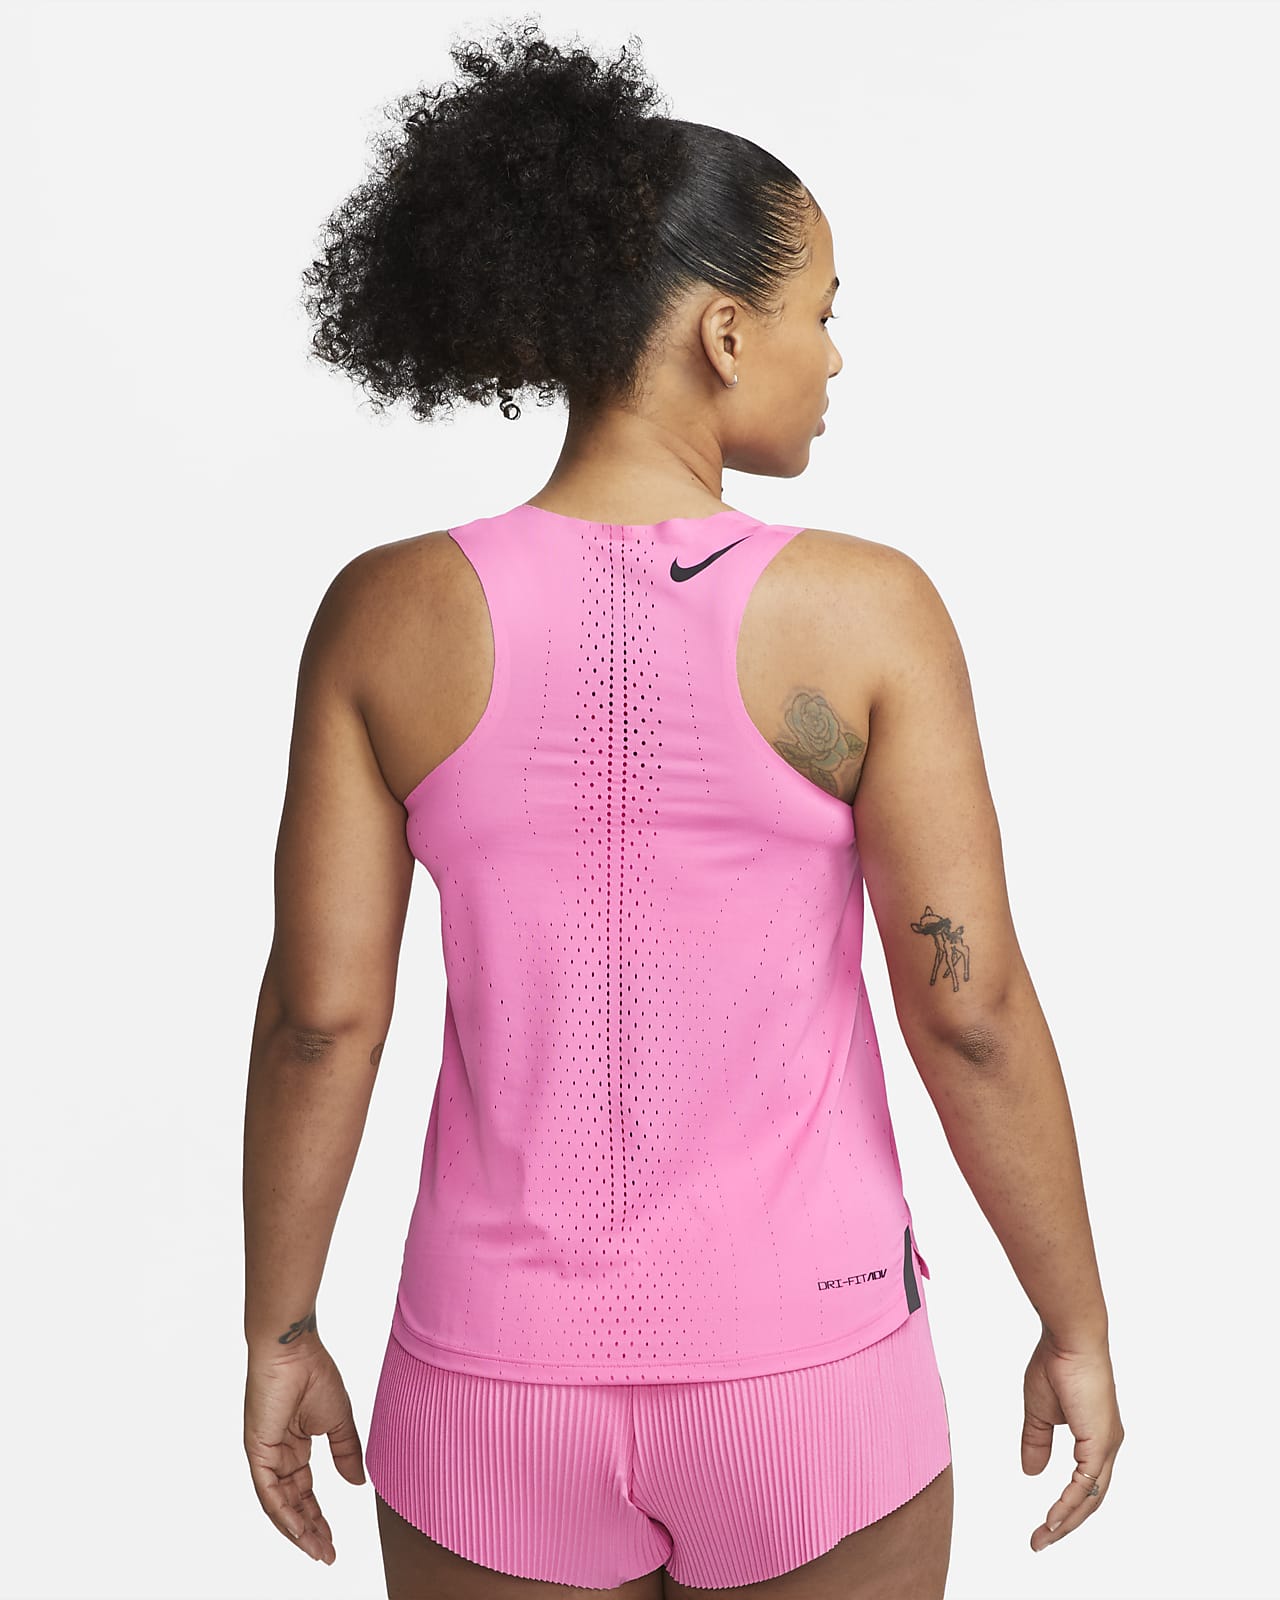 enjuague pasaporte Por encima de la cabeza y el hombro Camiseta sin mangas para carrera para mujer Nike Dri-FIT ADV AeroSwift. Nike .com